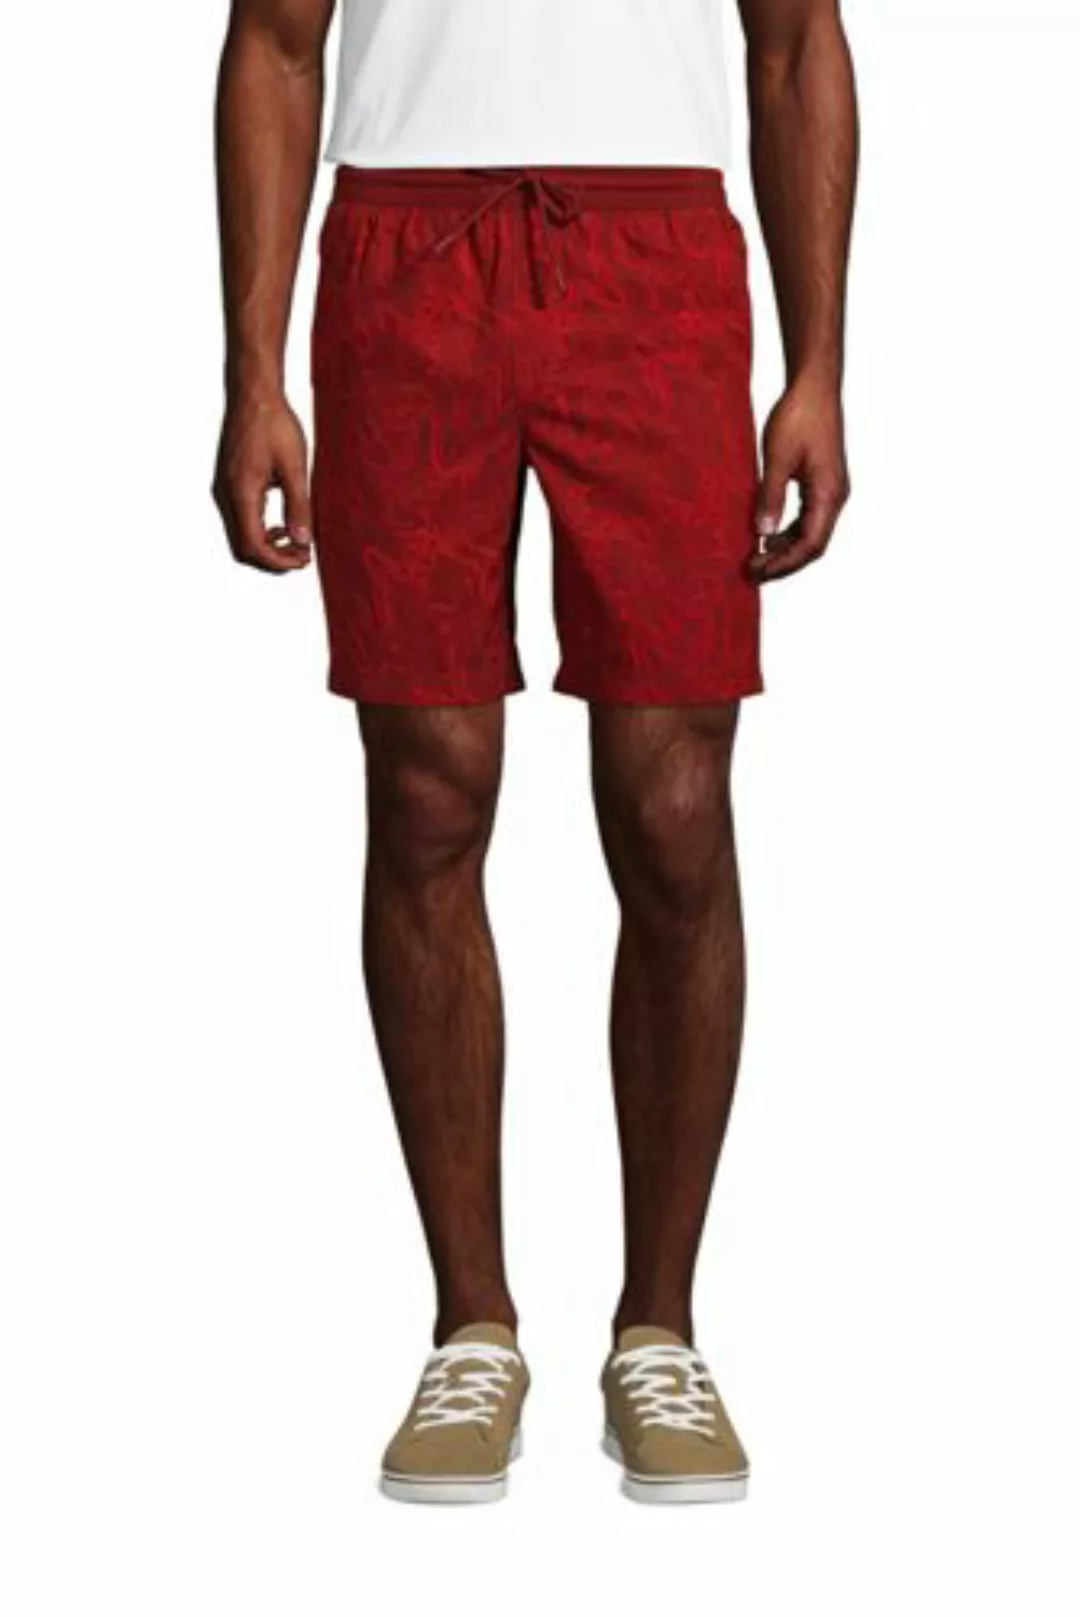 Performance Chino-Shorts, Herren, Größe: L Normal, Rot, Polyester-Mischung, günstig online kaufen